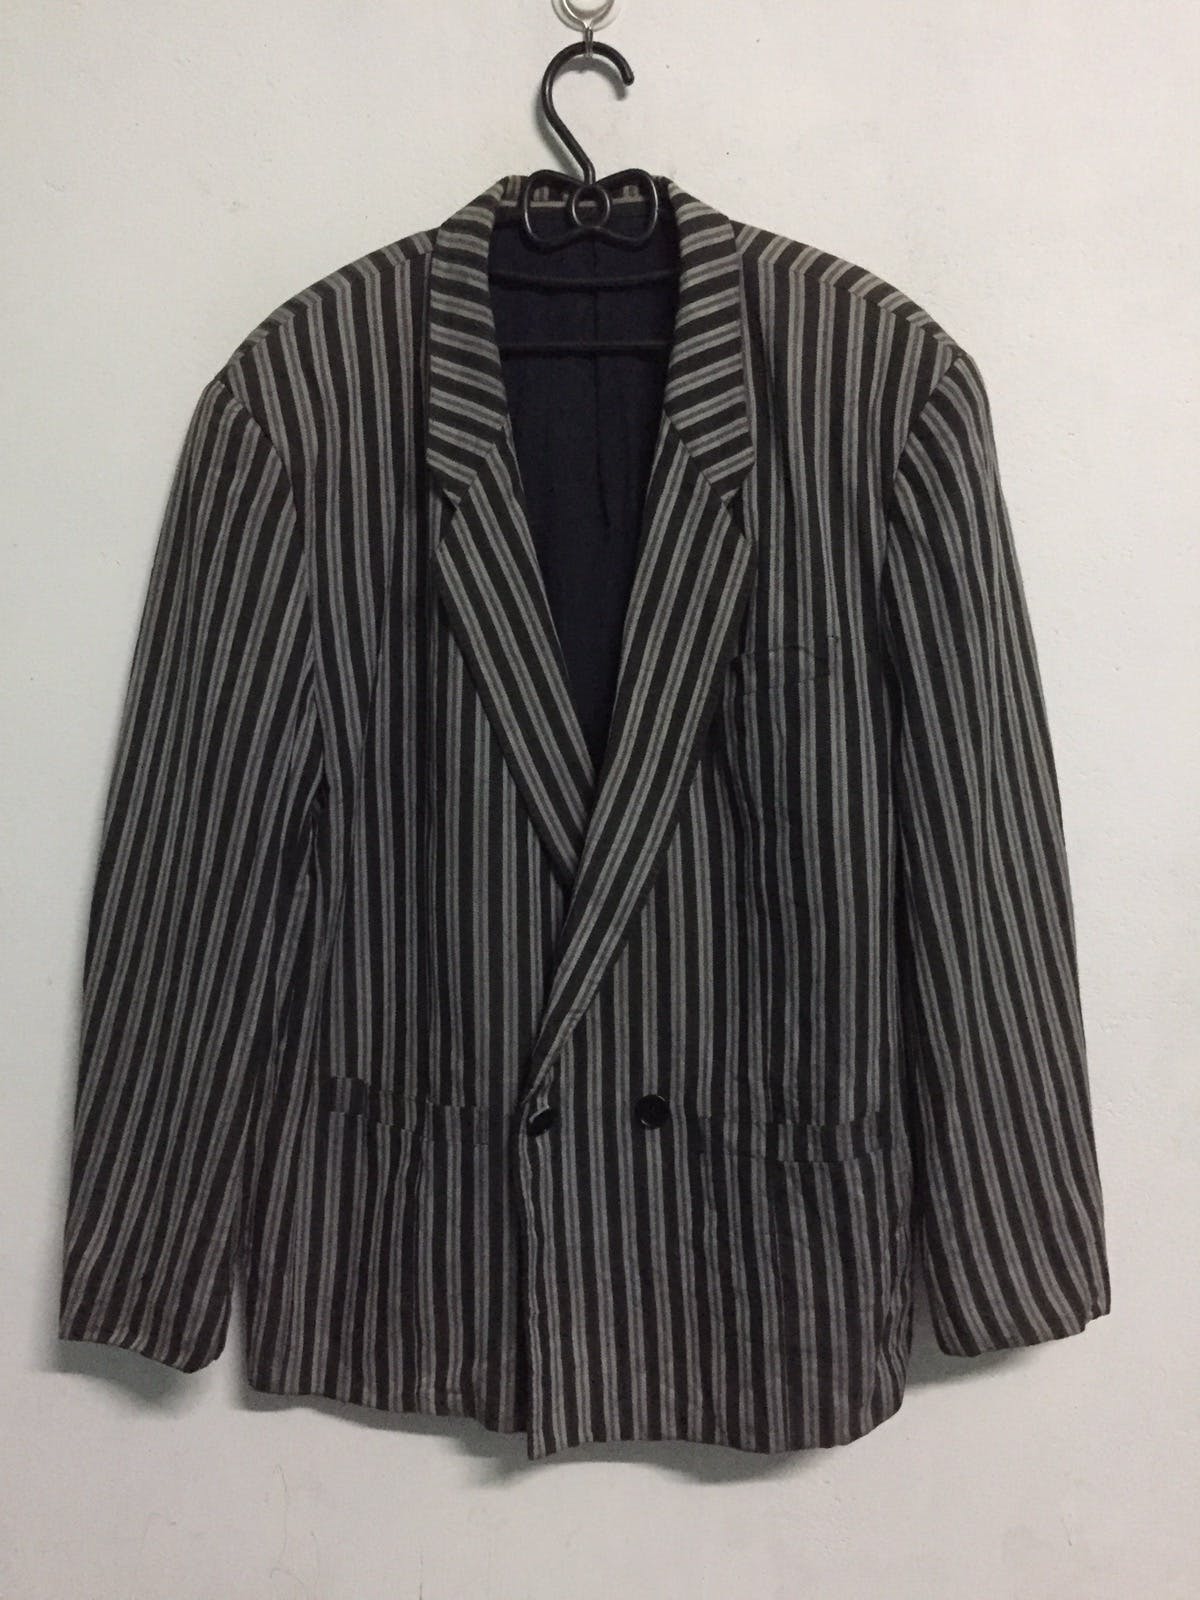 Kenzo Zebra Stripes Jacket Coat Made in Japan - 1